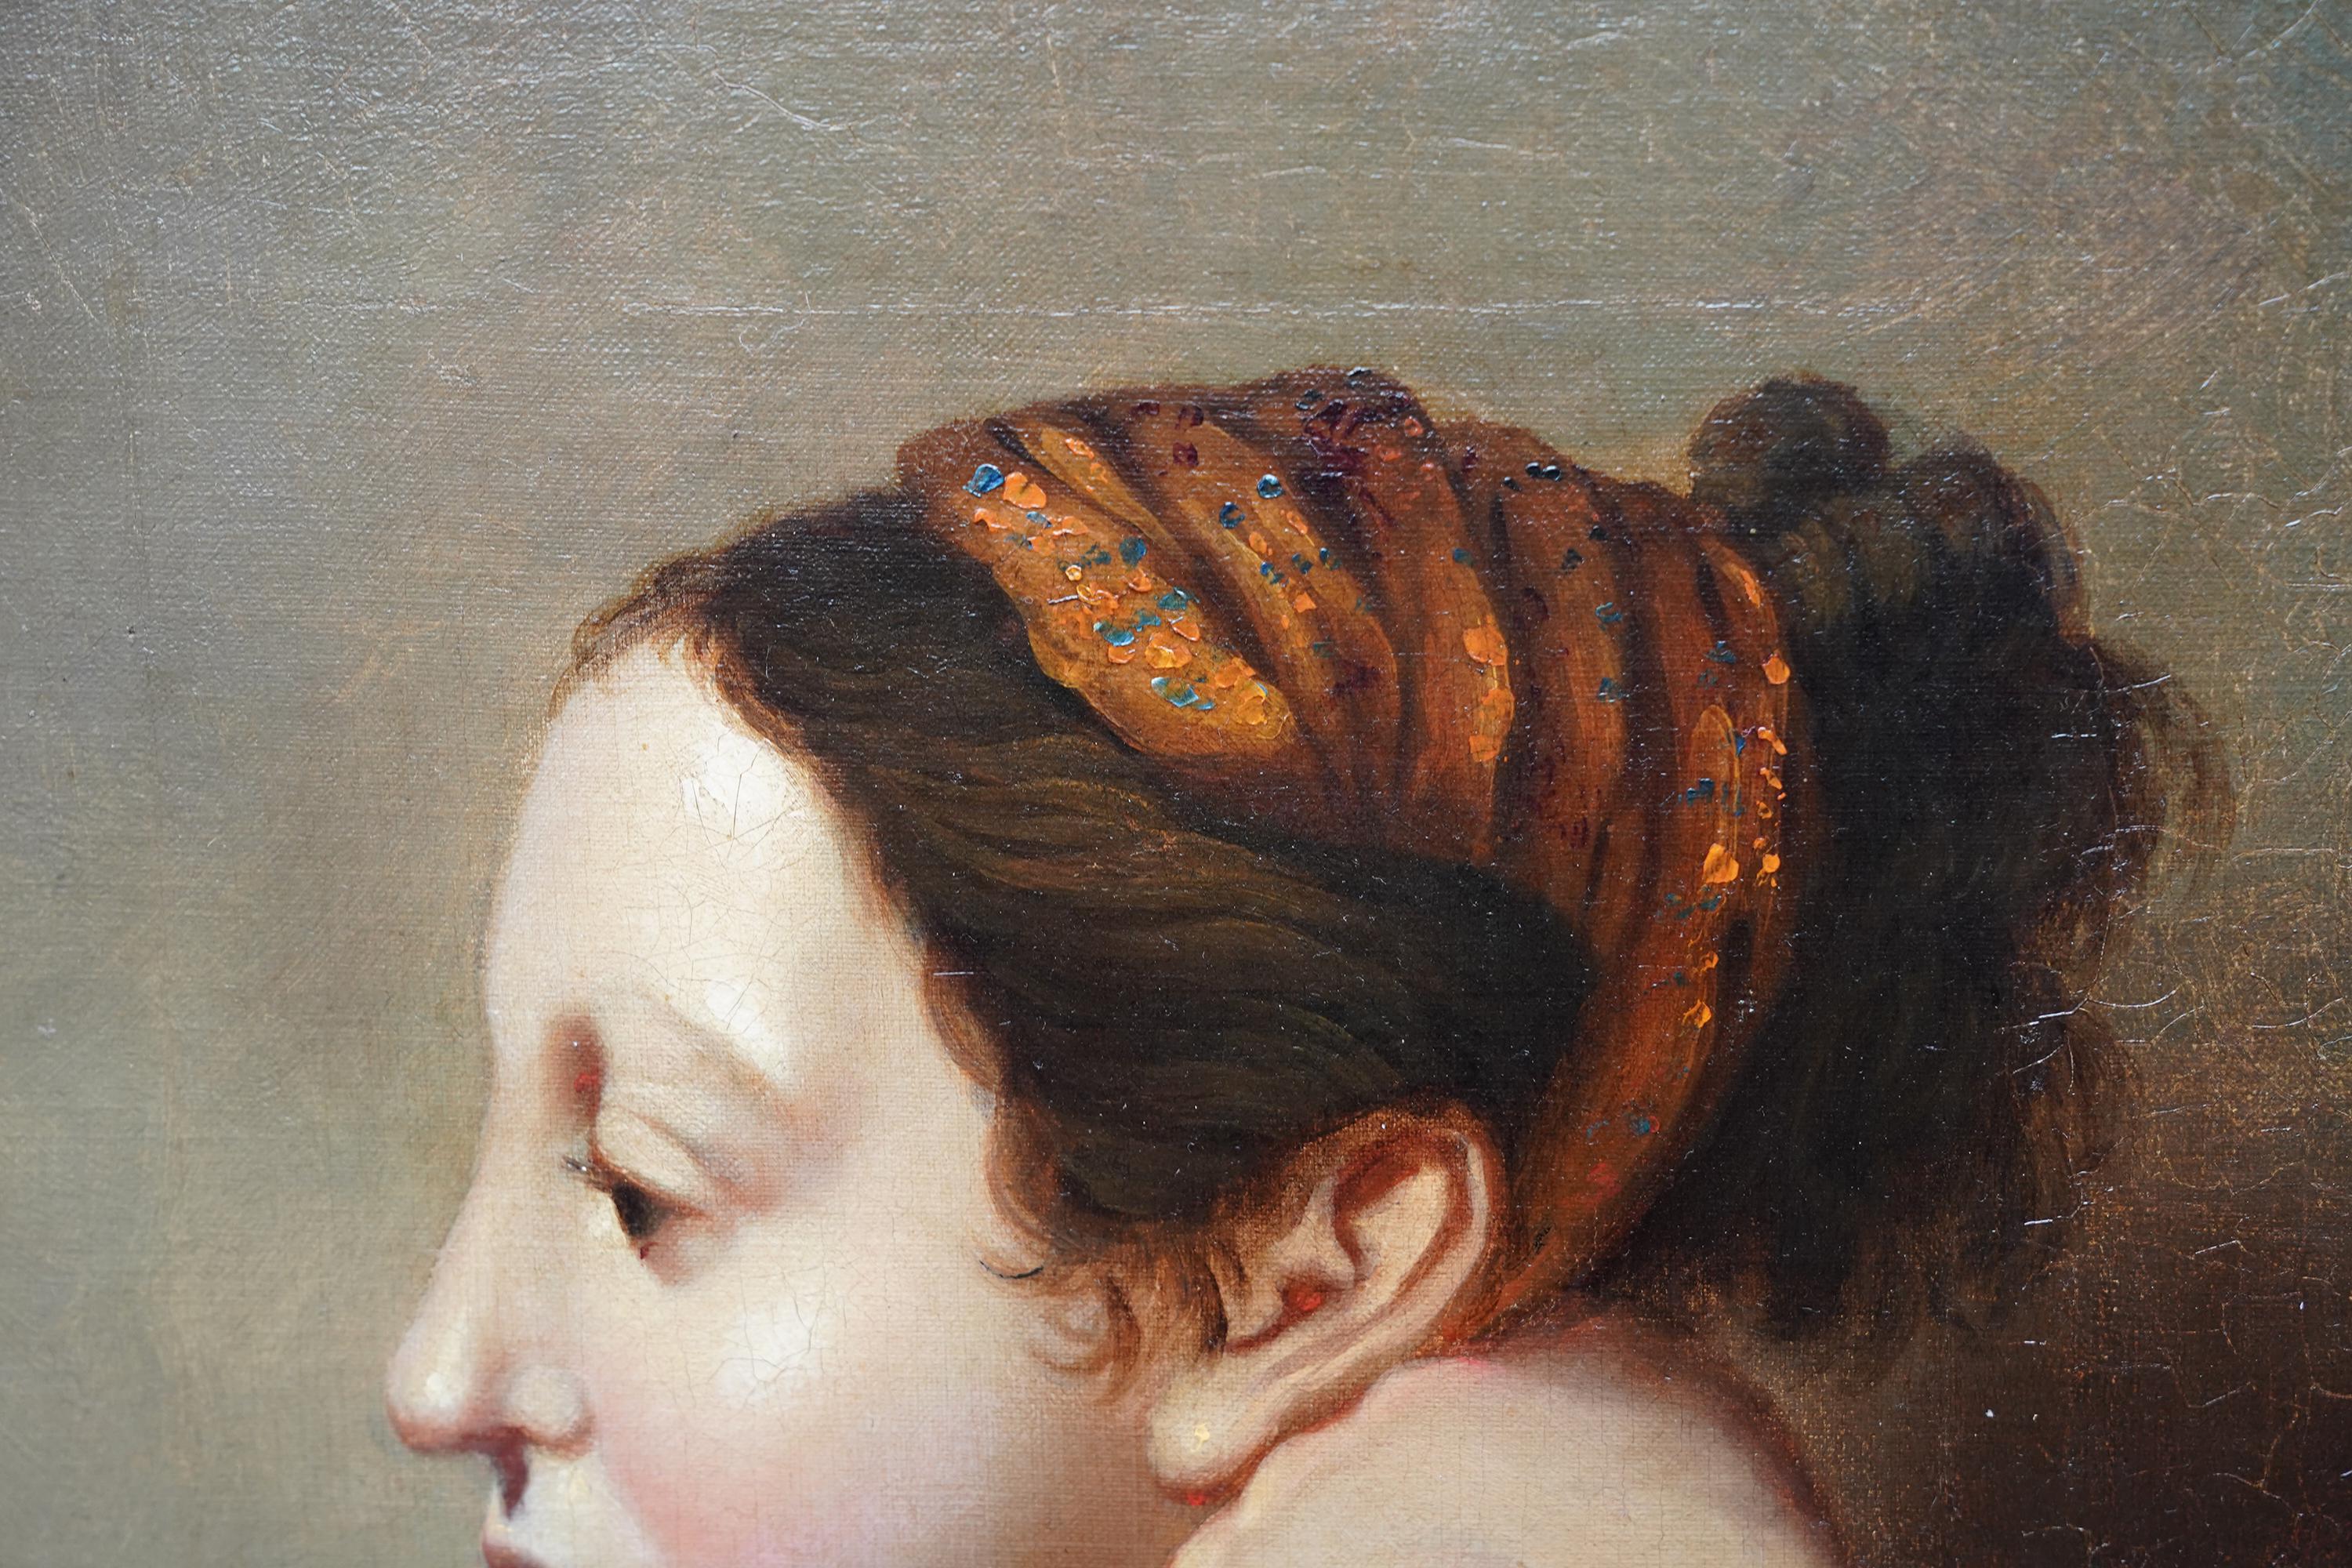 Ce charmant portrait à l'huile de maître ancien français est attribué au cercle de Jean Auguste Dominique Ingres. Peinte vers 1810, elle représente une belle femme de profil, tête et épaules, reposant sa tête sur une main. L'attention portée aux